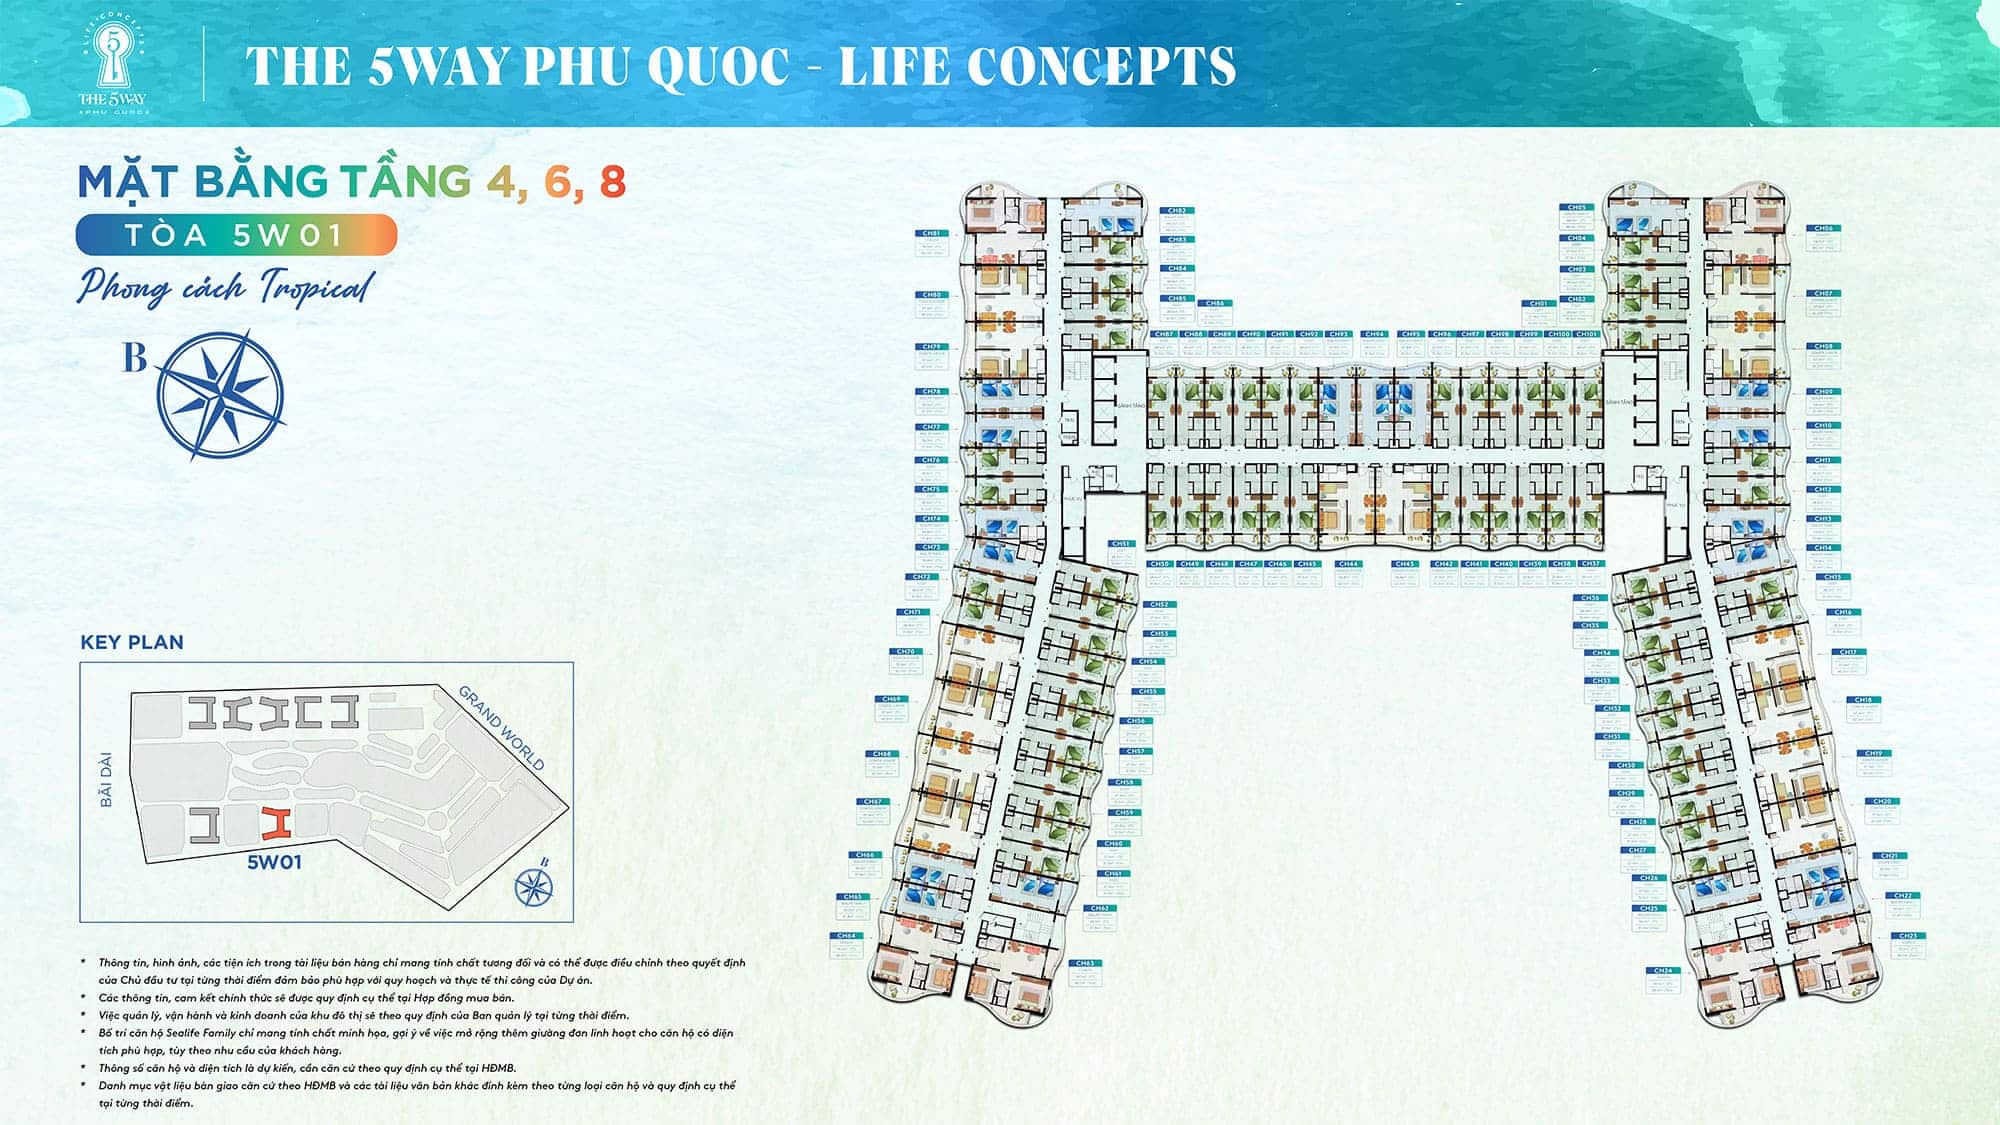 Mặt bằng Tầng 4, Tầng 6, Tầng 8, Tòa 5W01 phong cách Tropical thuộc dự án The 5Way - Life Concepts.